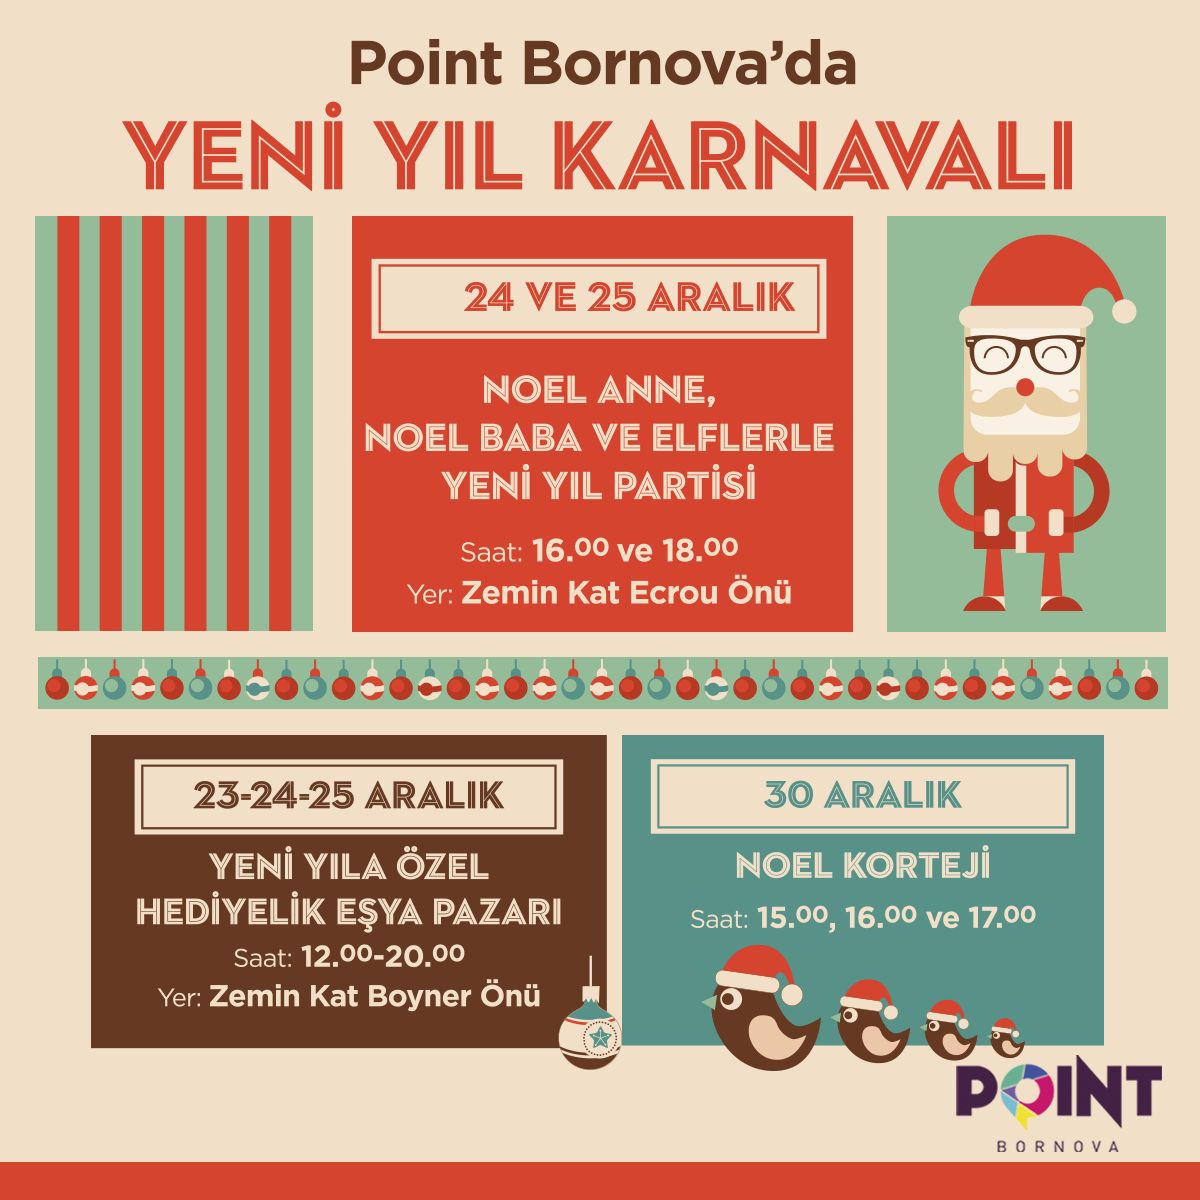 Point Bornova’da Yeni Yıl Karnavalı